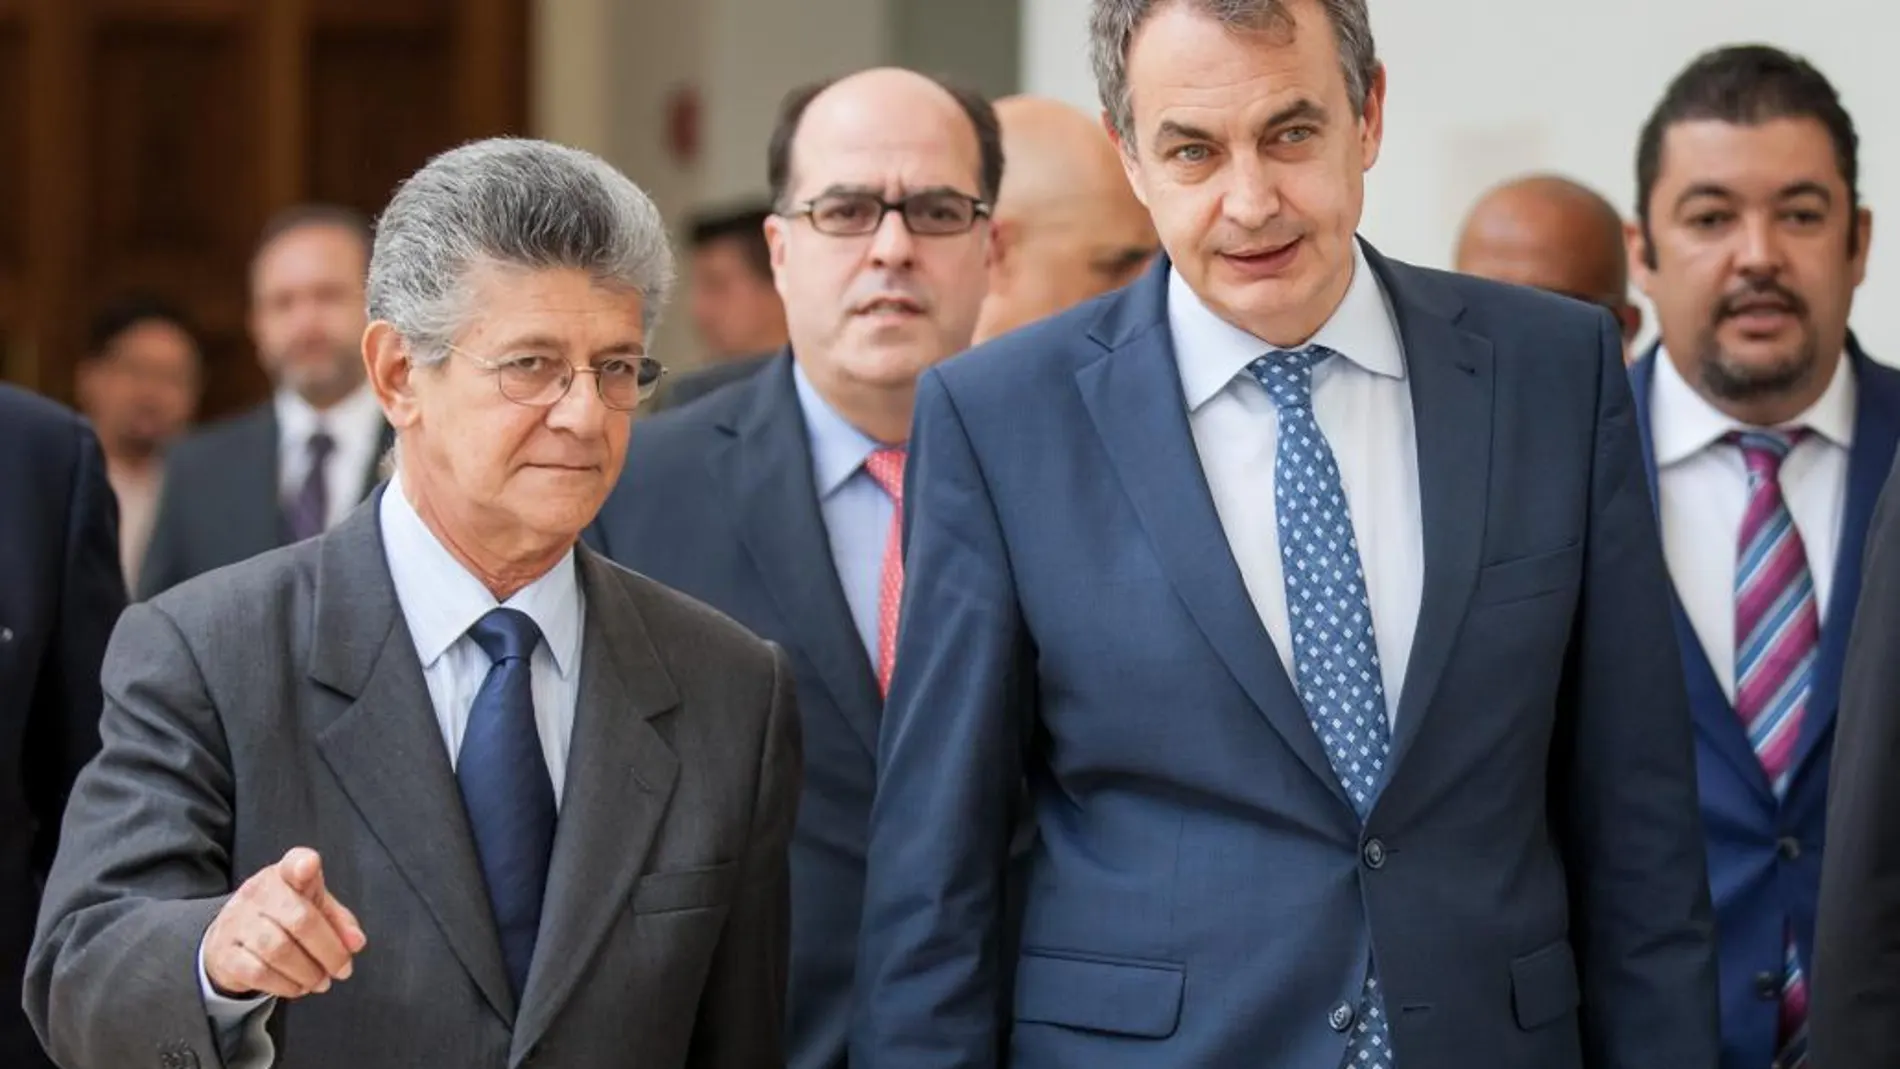 El expresamente de España Jose Luis Zapatero (d) sale de una reunión, acompañado del presidente de la Asamblea Nacional de Venezuela, Henry Ramos Allup (i) el pasado jueves 19 de mayo del 2016, en Caracas (Venezuela).